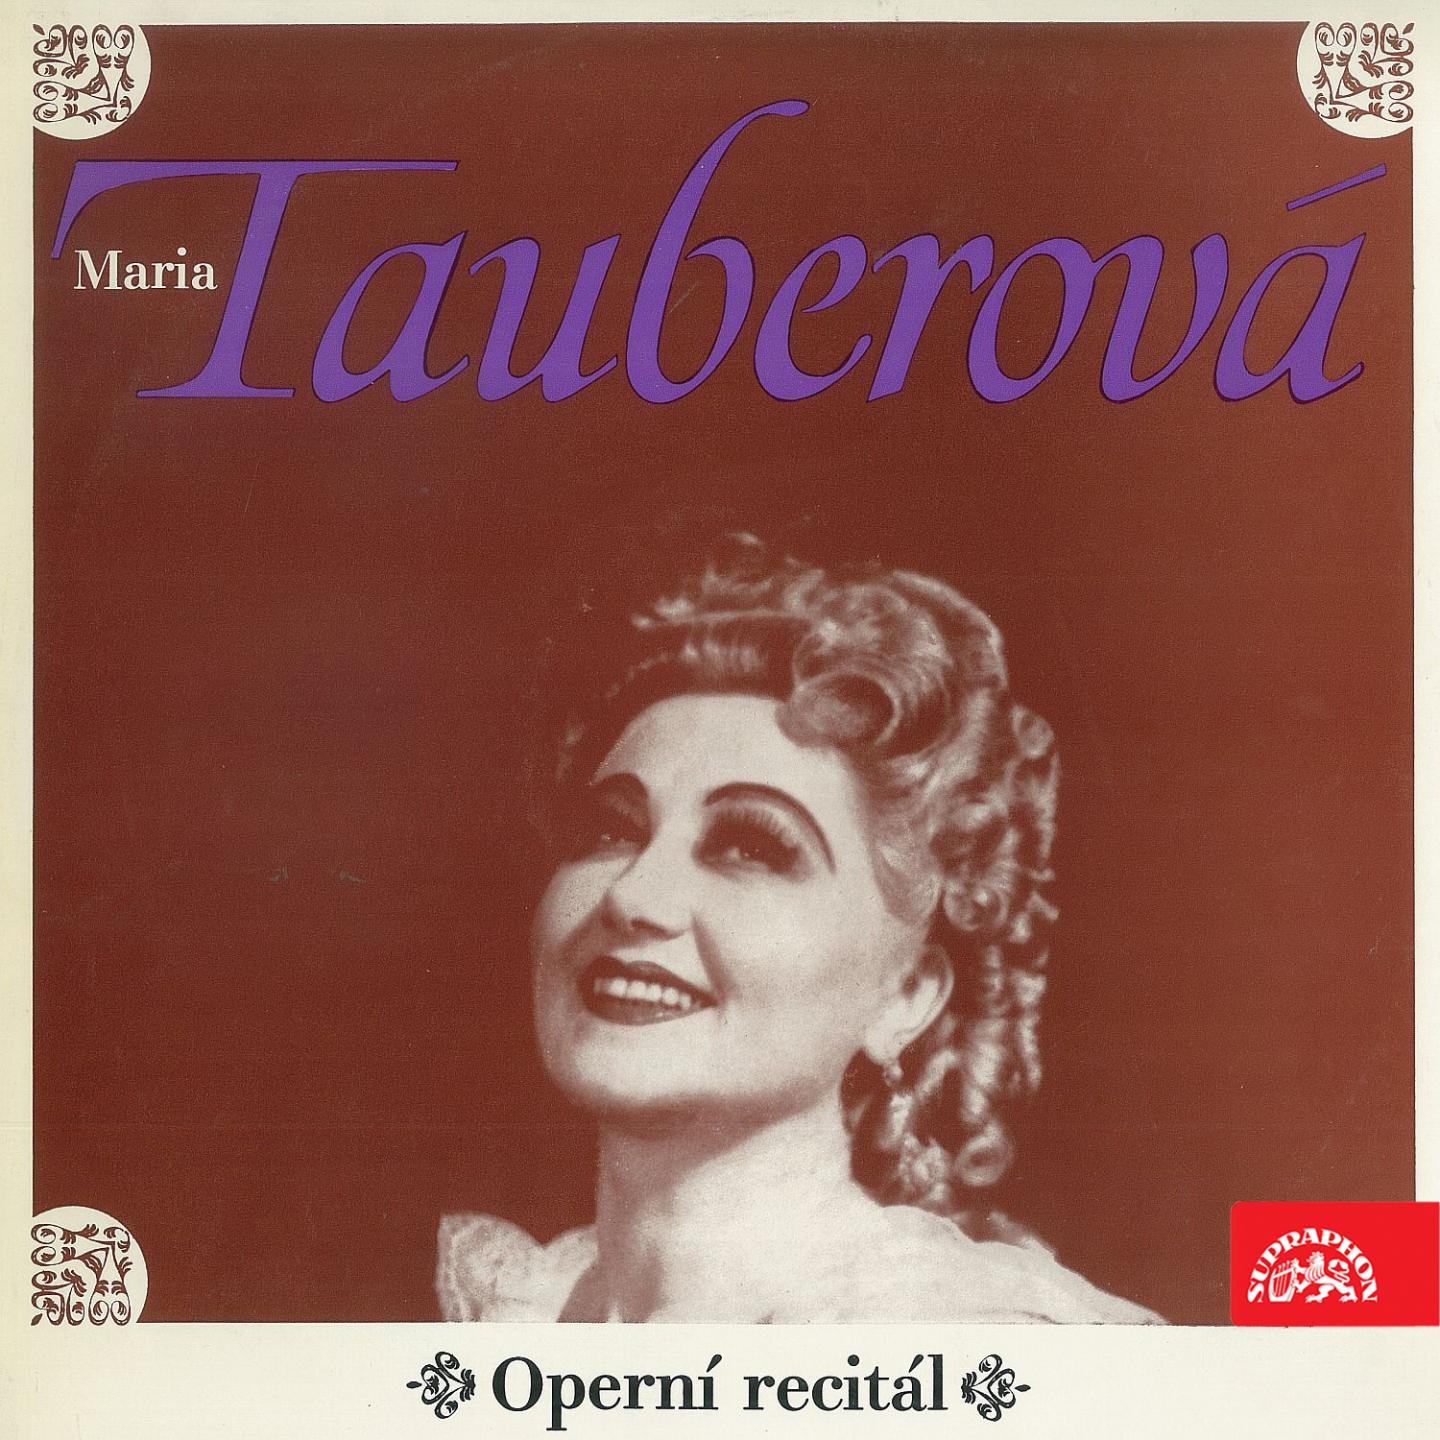 La Traviata, ., Act II: "." (Violetta)